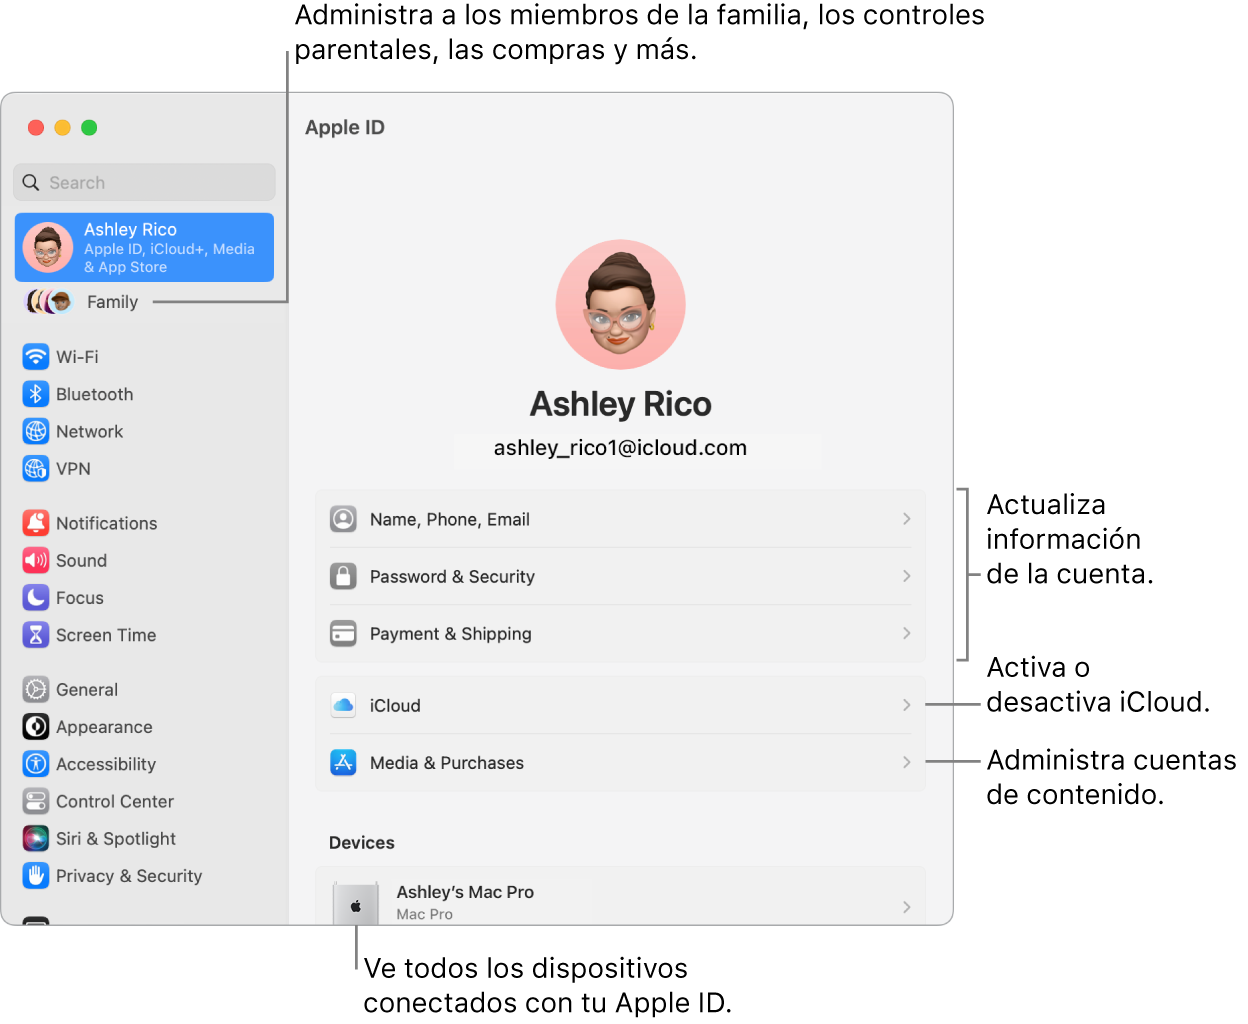 El panel Apple ID en Configuración del Sistema con textos para actualizar la información de la cuenta, activar o desactivar funciones de iCloud, administrar cuentas de contenido, y la sección Familia, donde puedes administrar familiares, controles parentales, compras y más.